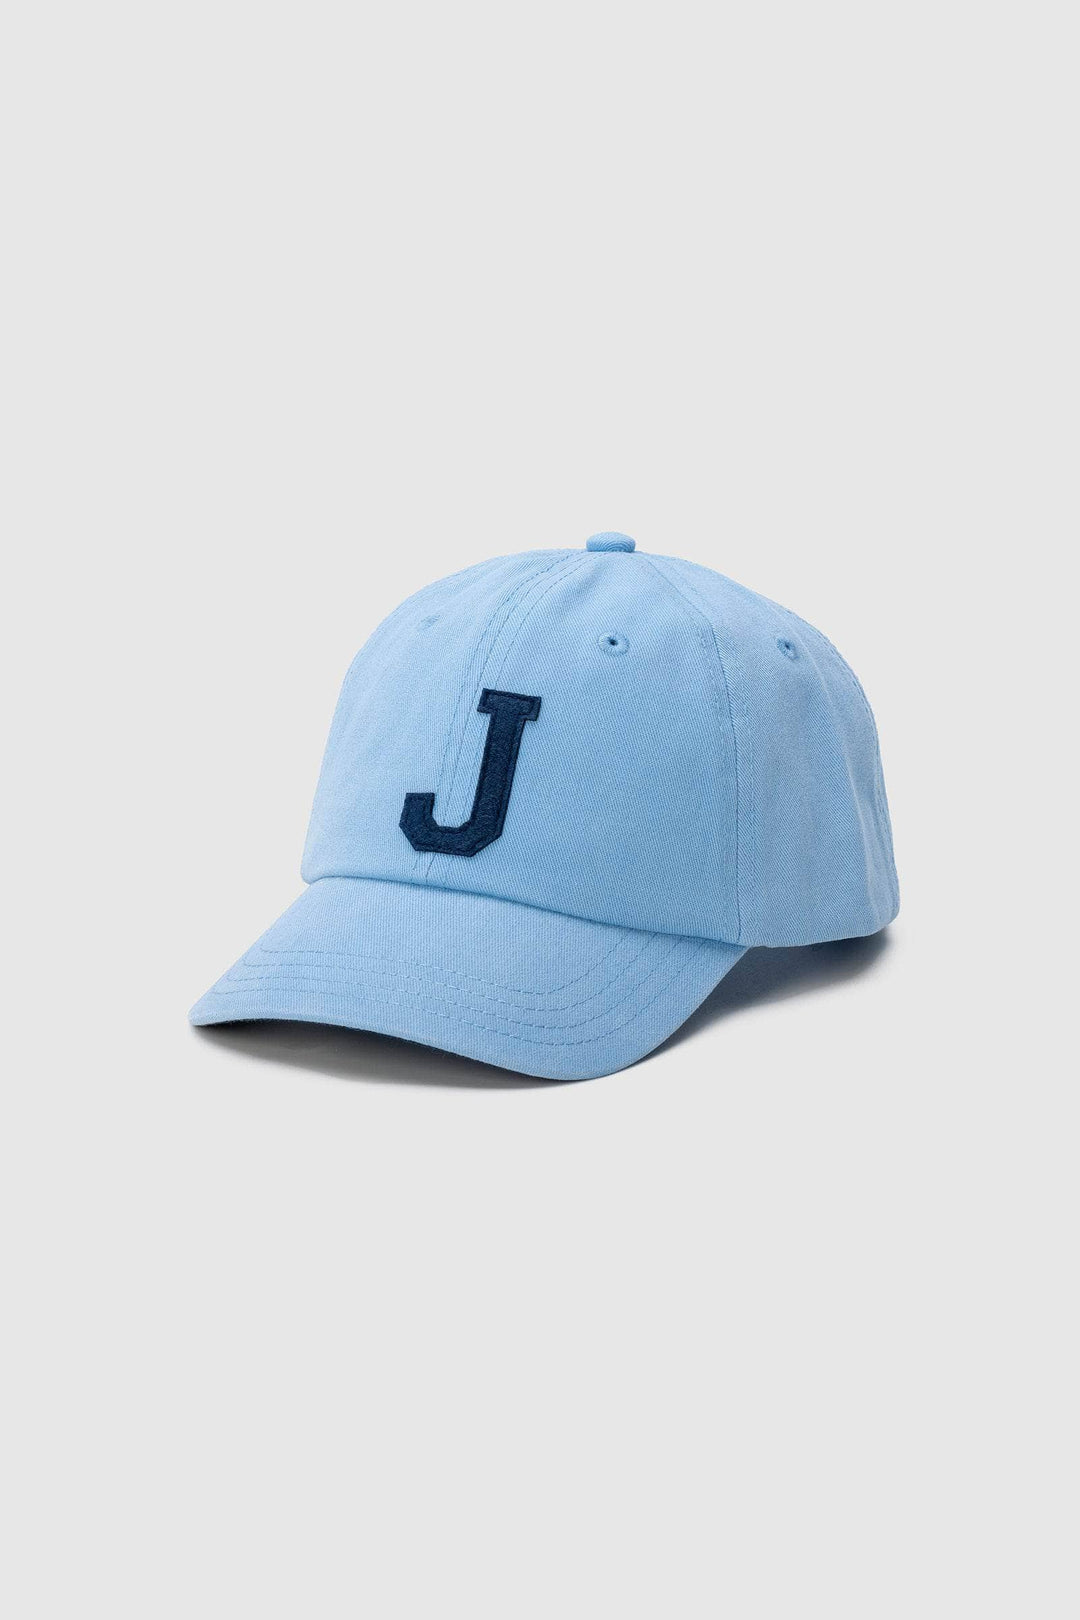 JUNIOR CUSTOM LETTER CAP BLUE